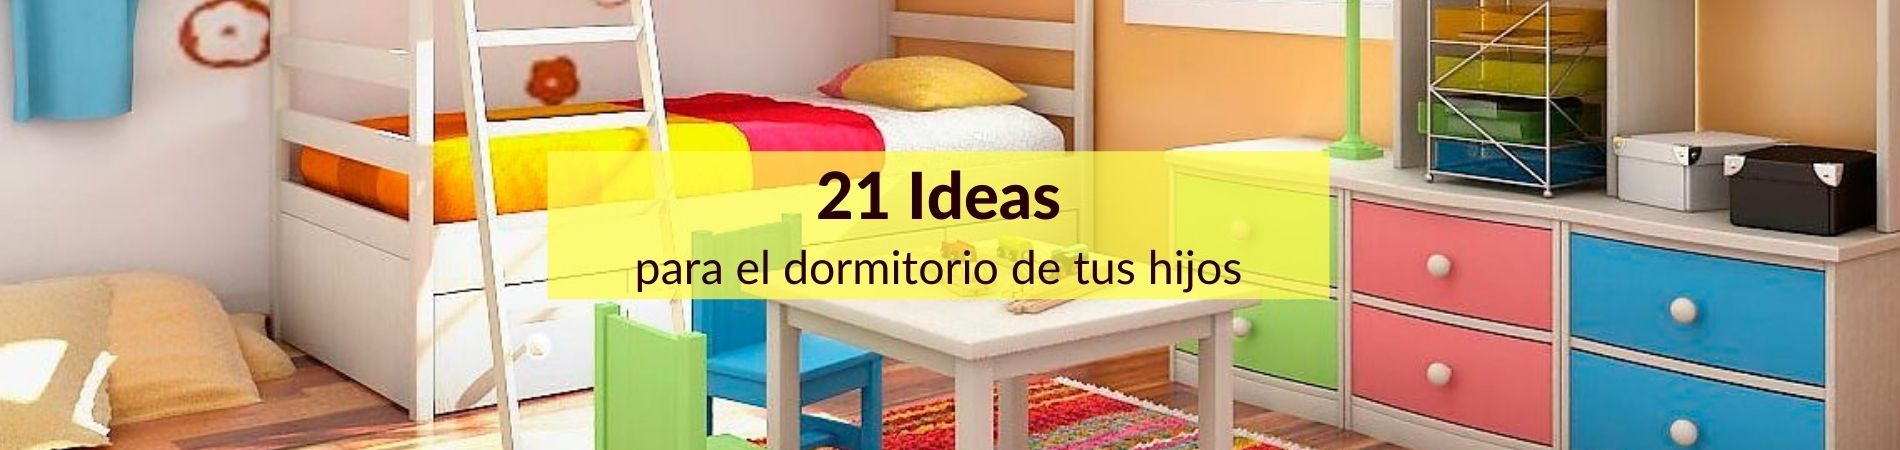 ideas dormitorio niños